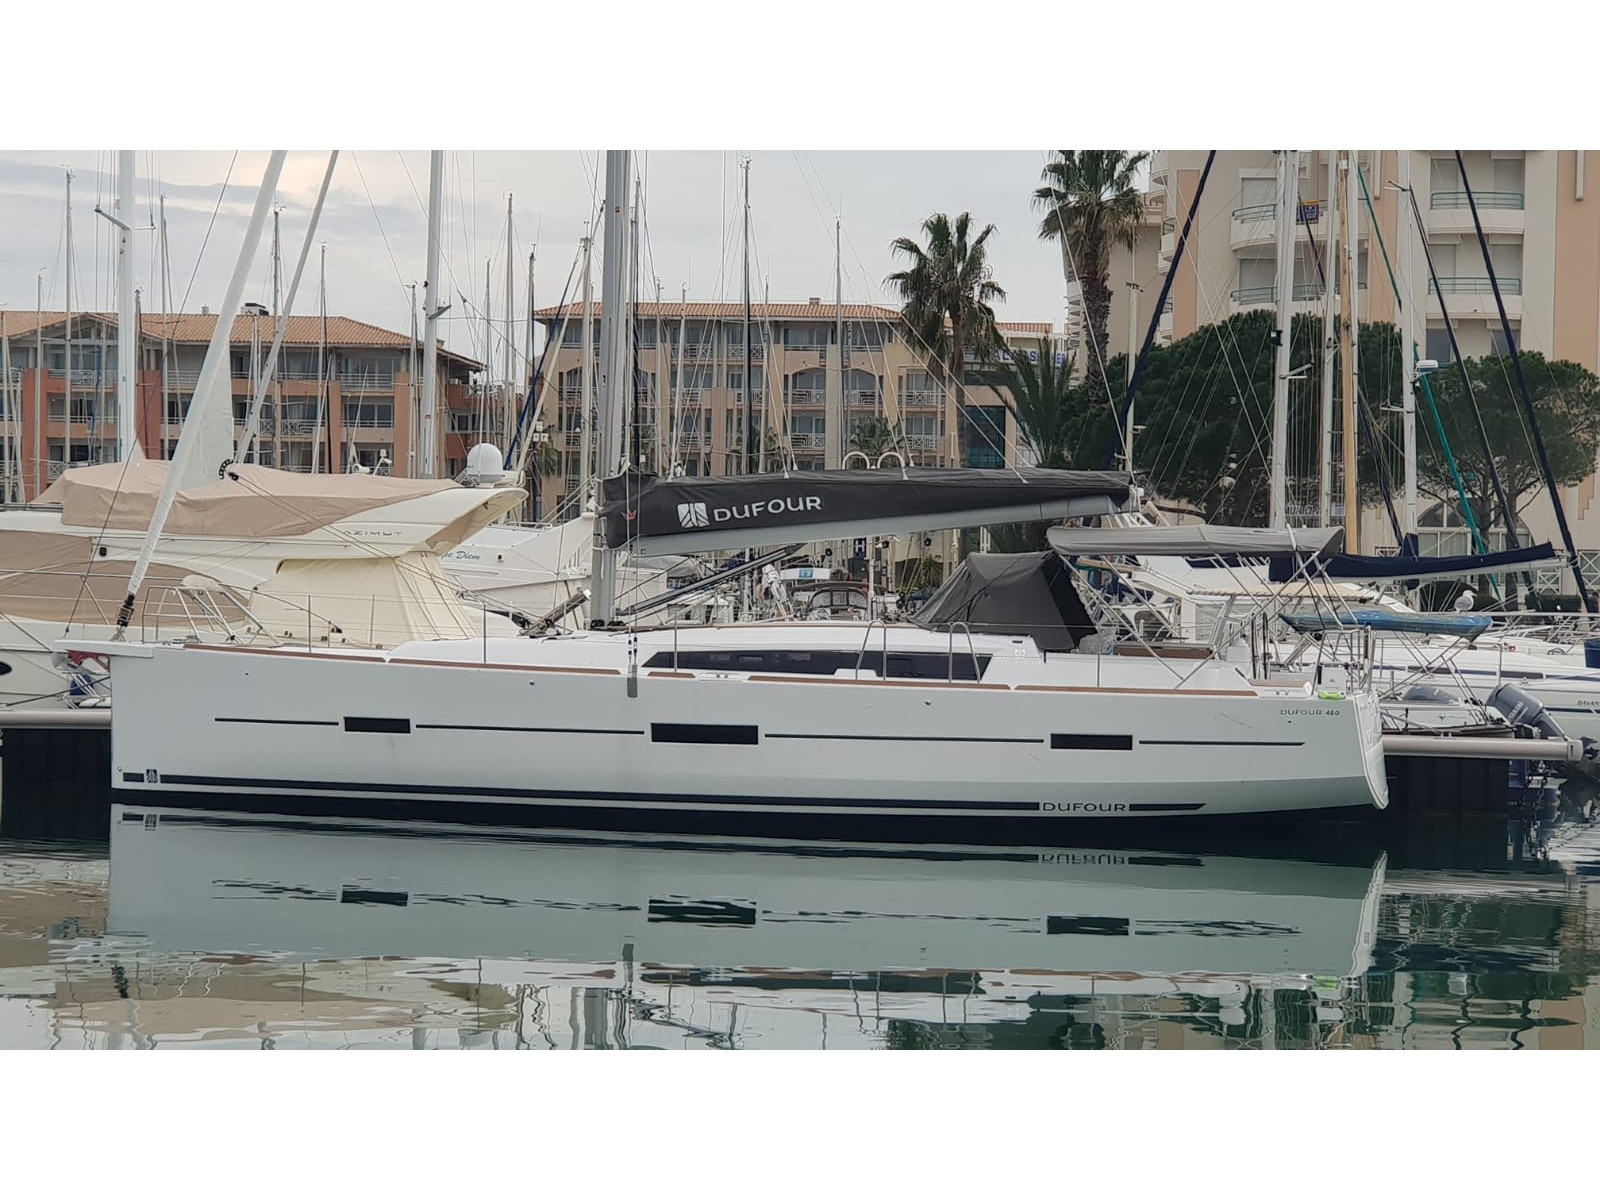 Dufour 460 - Yacht Charter Tuscany & Boat hire in Italy Tuscany Piombino Salivoli 3